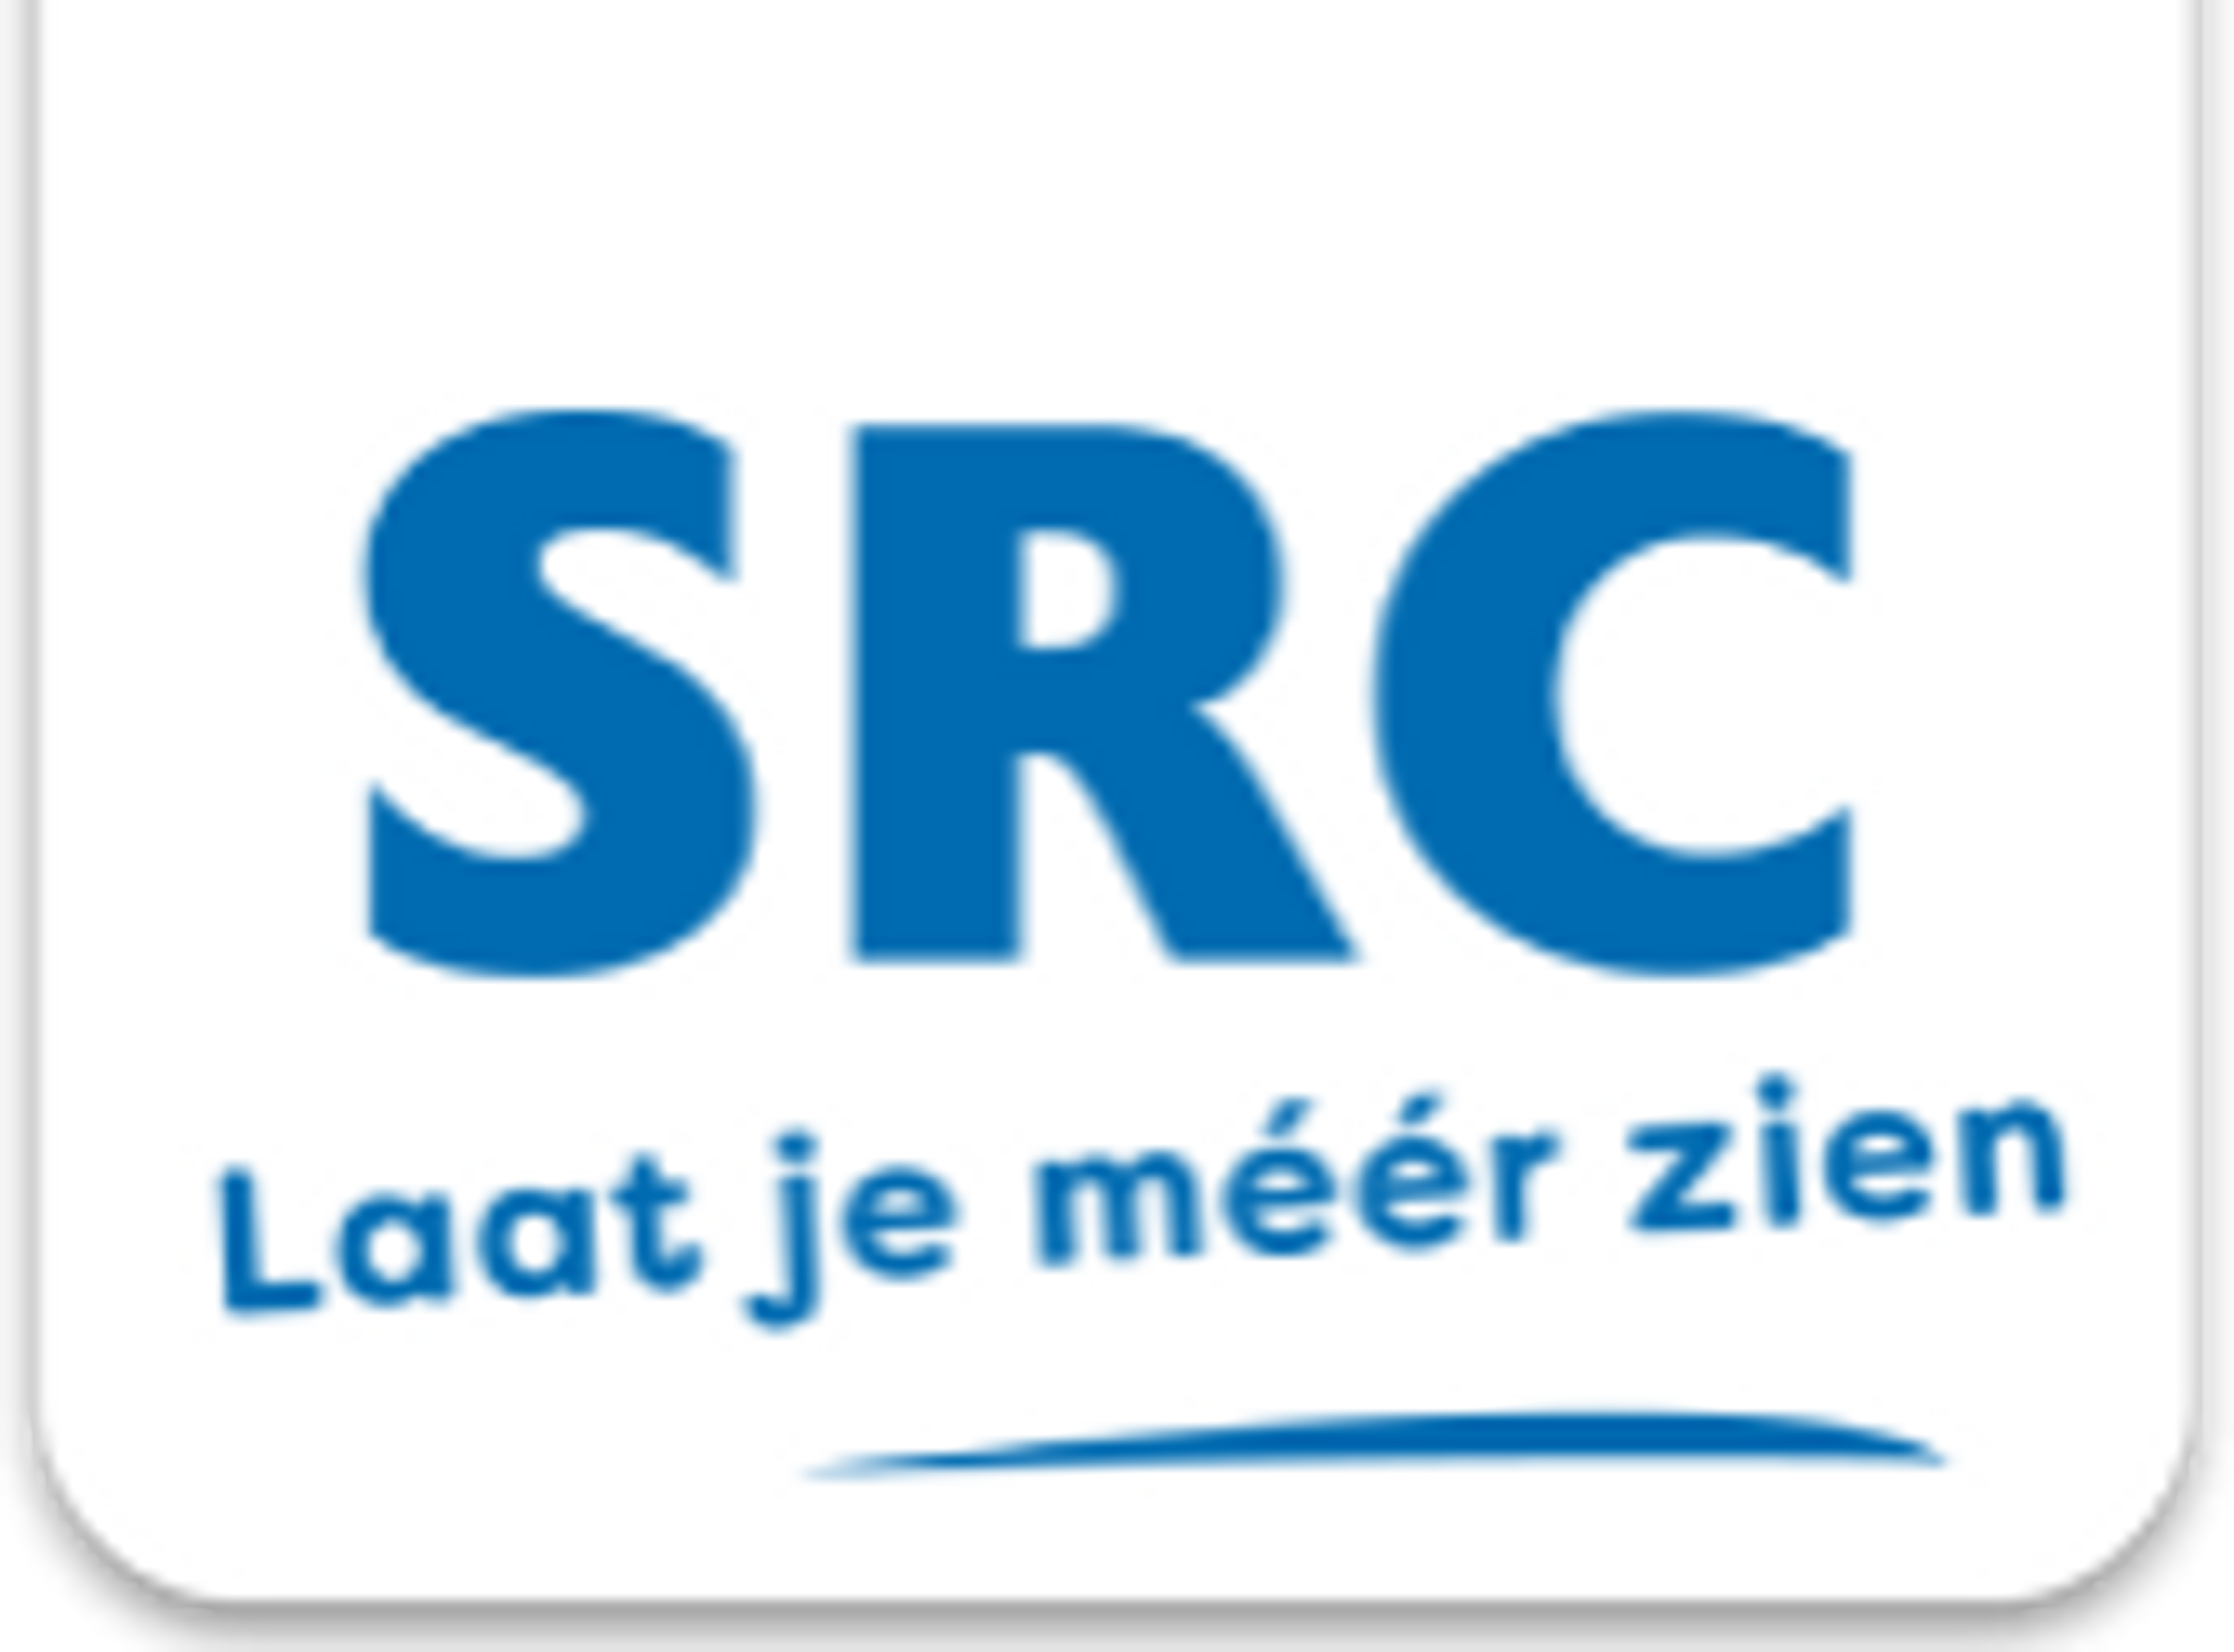 Src-reizen.nl logo